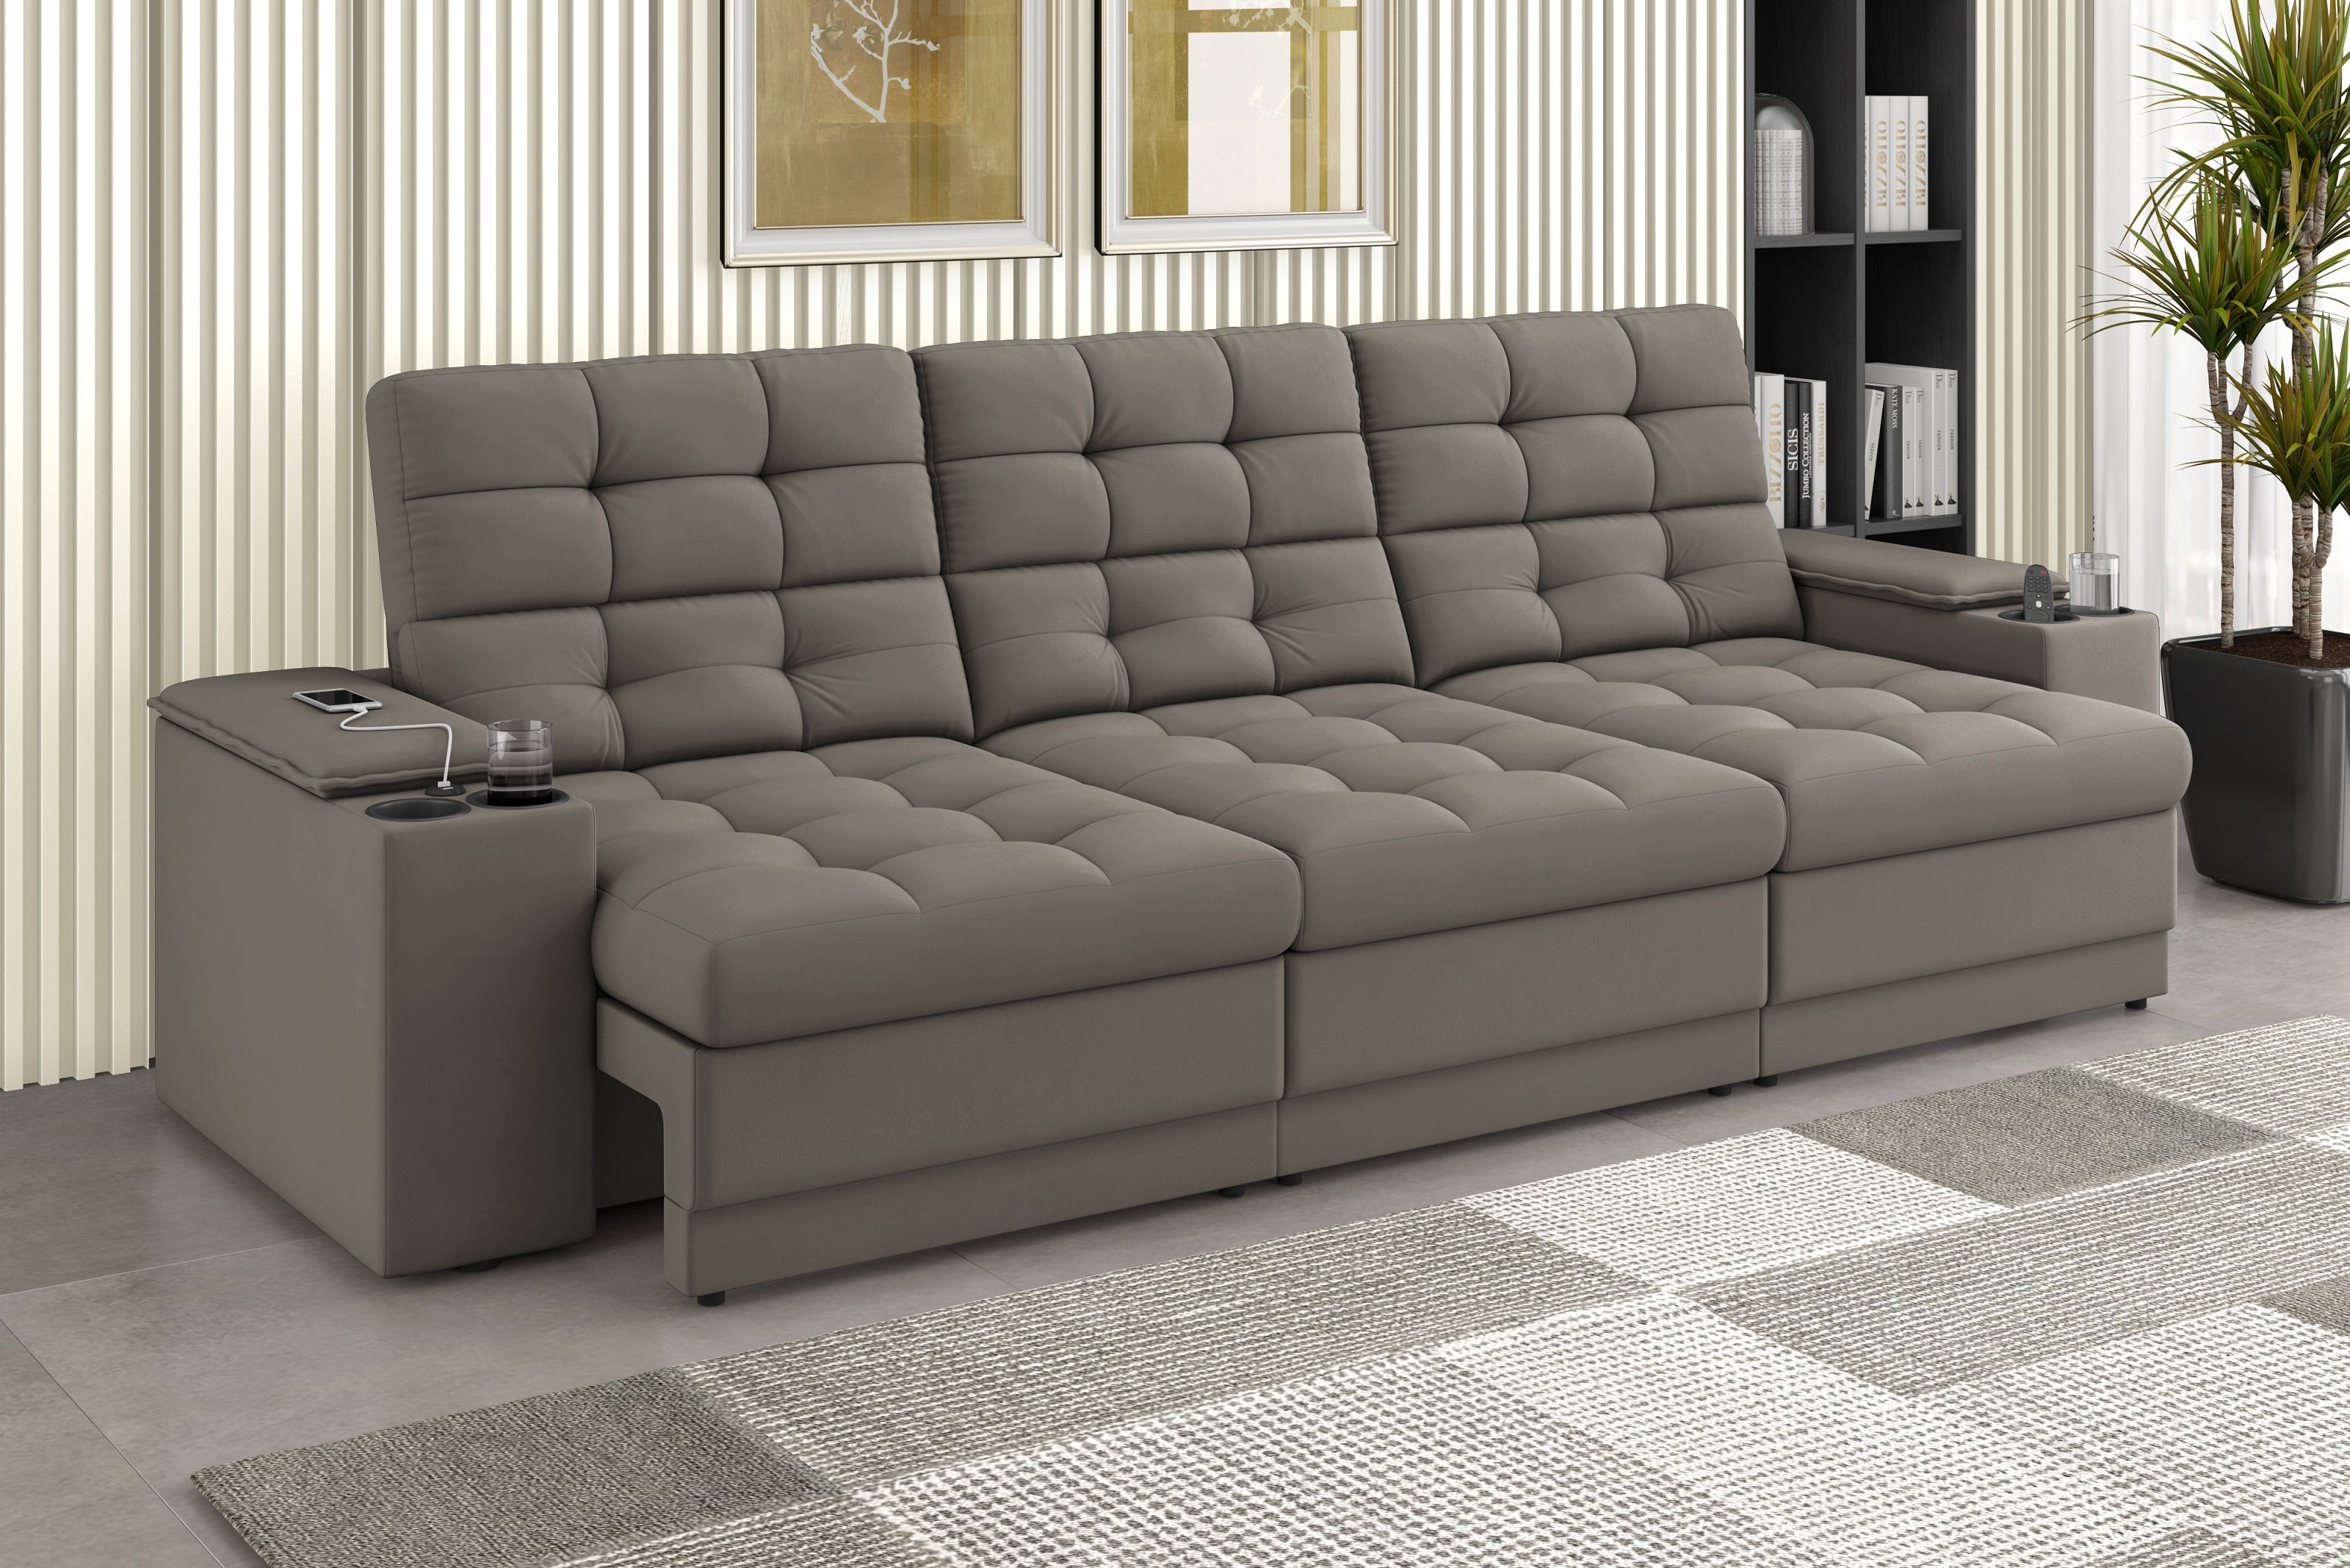 Sofá Confort Premium 2,30m Assento Retrátil/reclinável Porta Copos e Usb Suede Capuccino - Xflex - 1